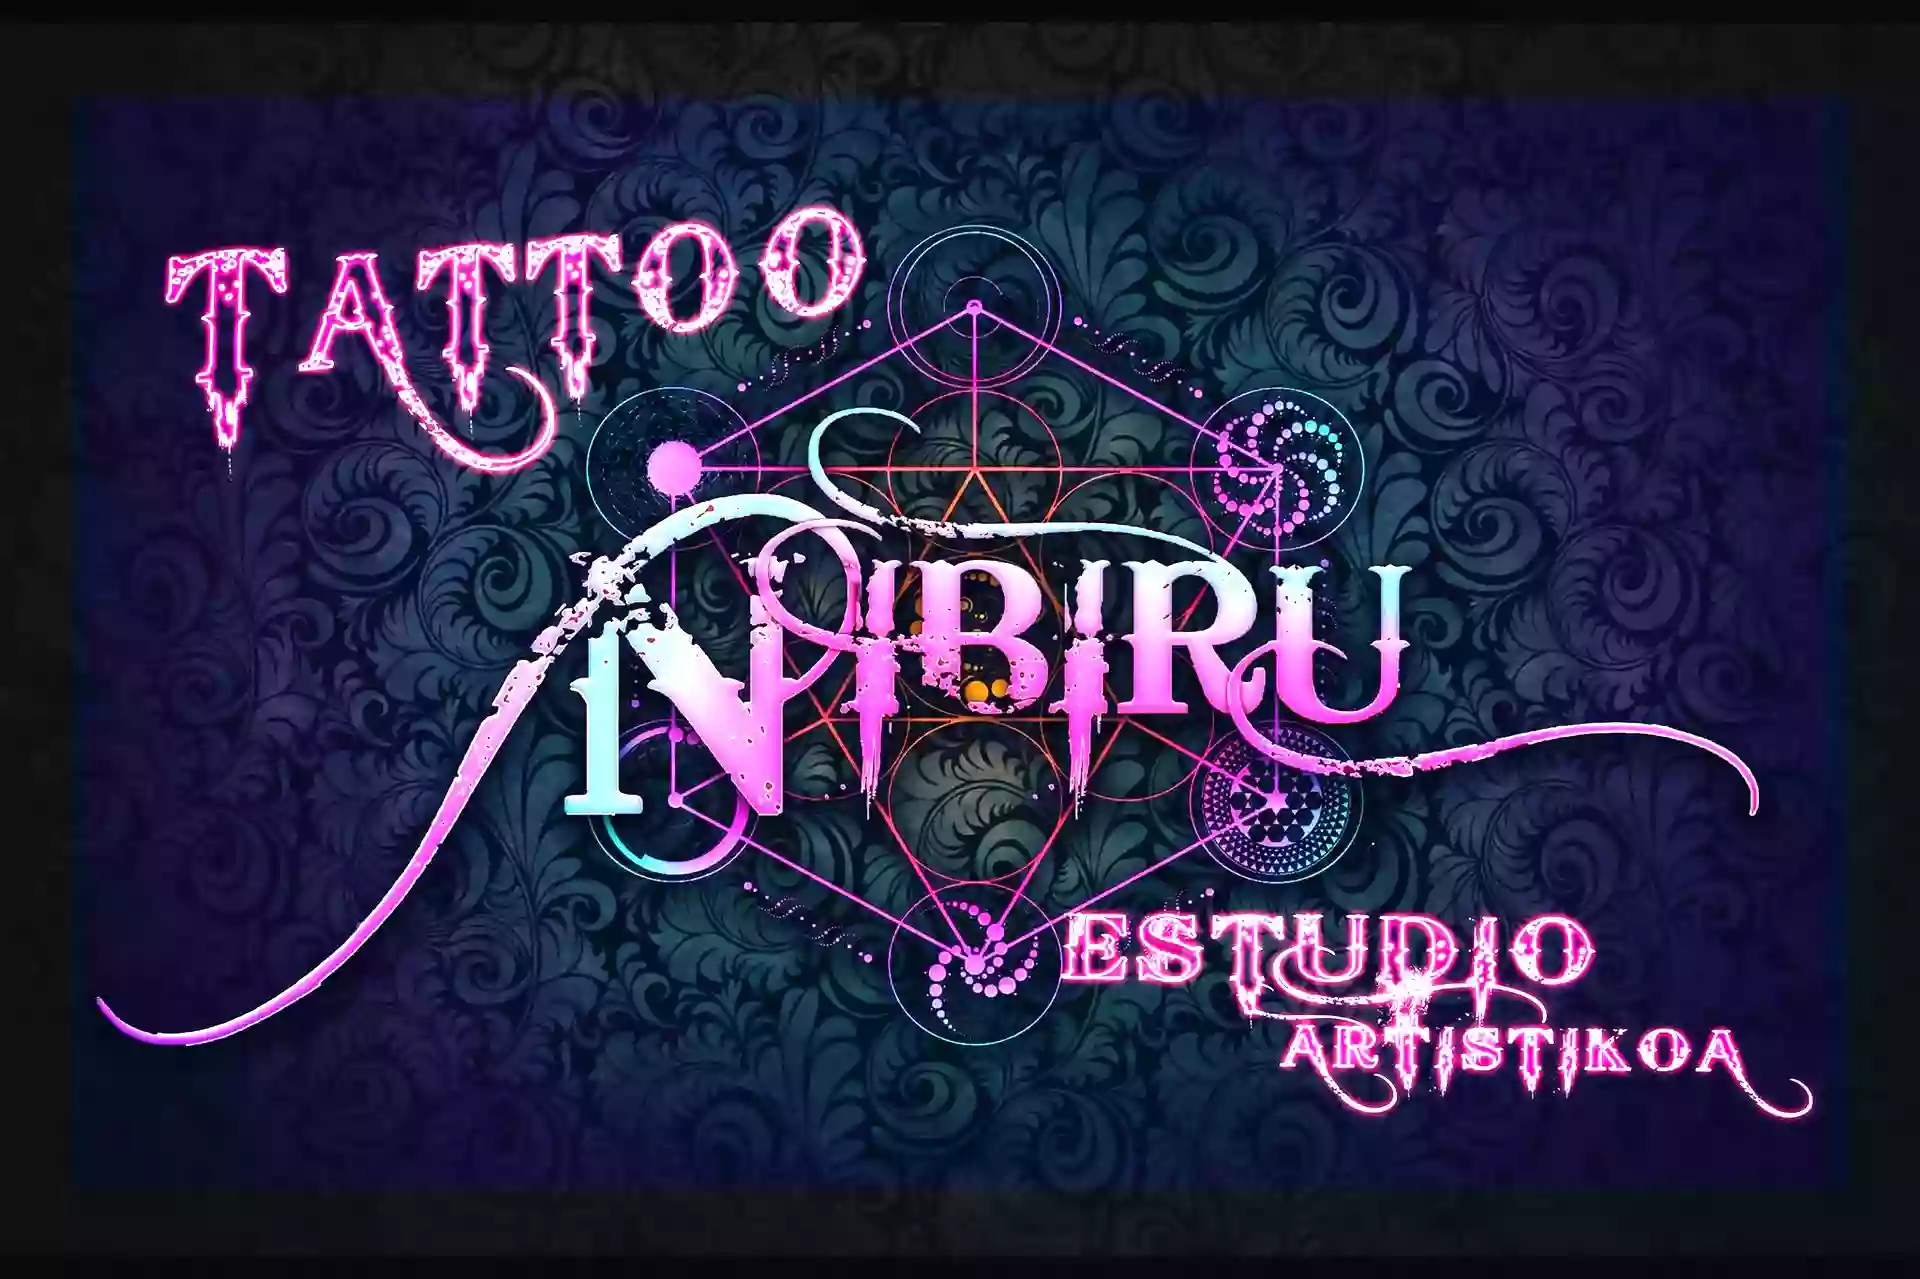 Nibiru Tattoo estudio artistikoa